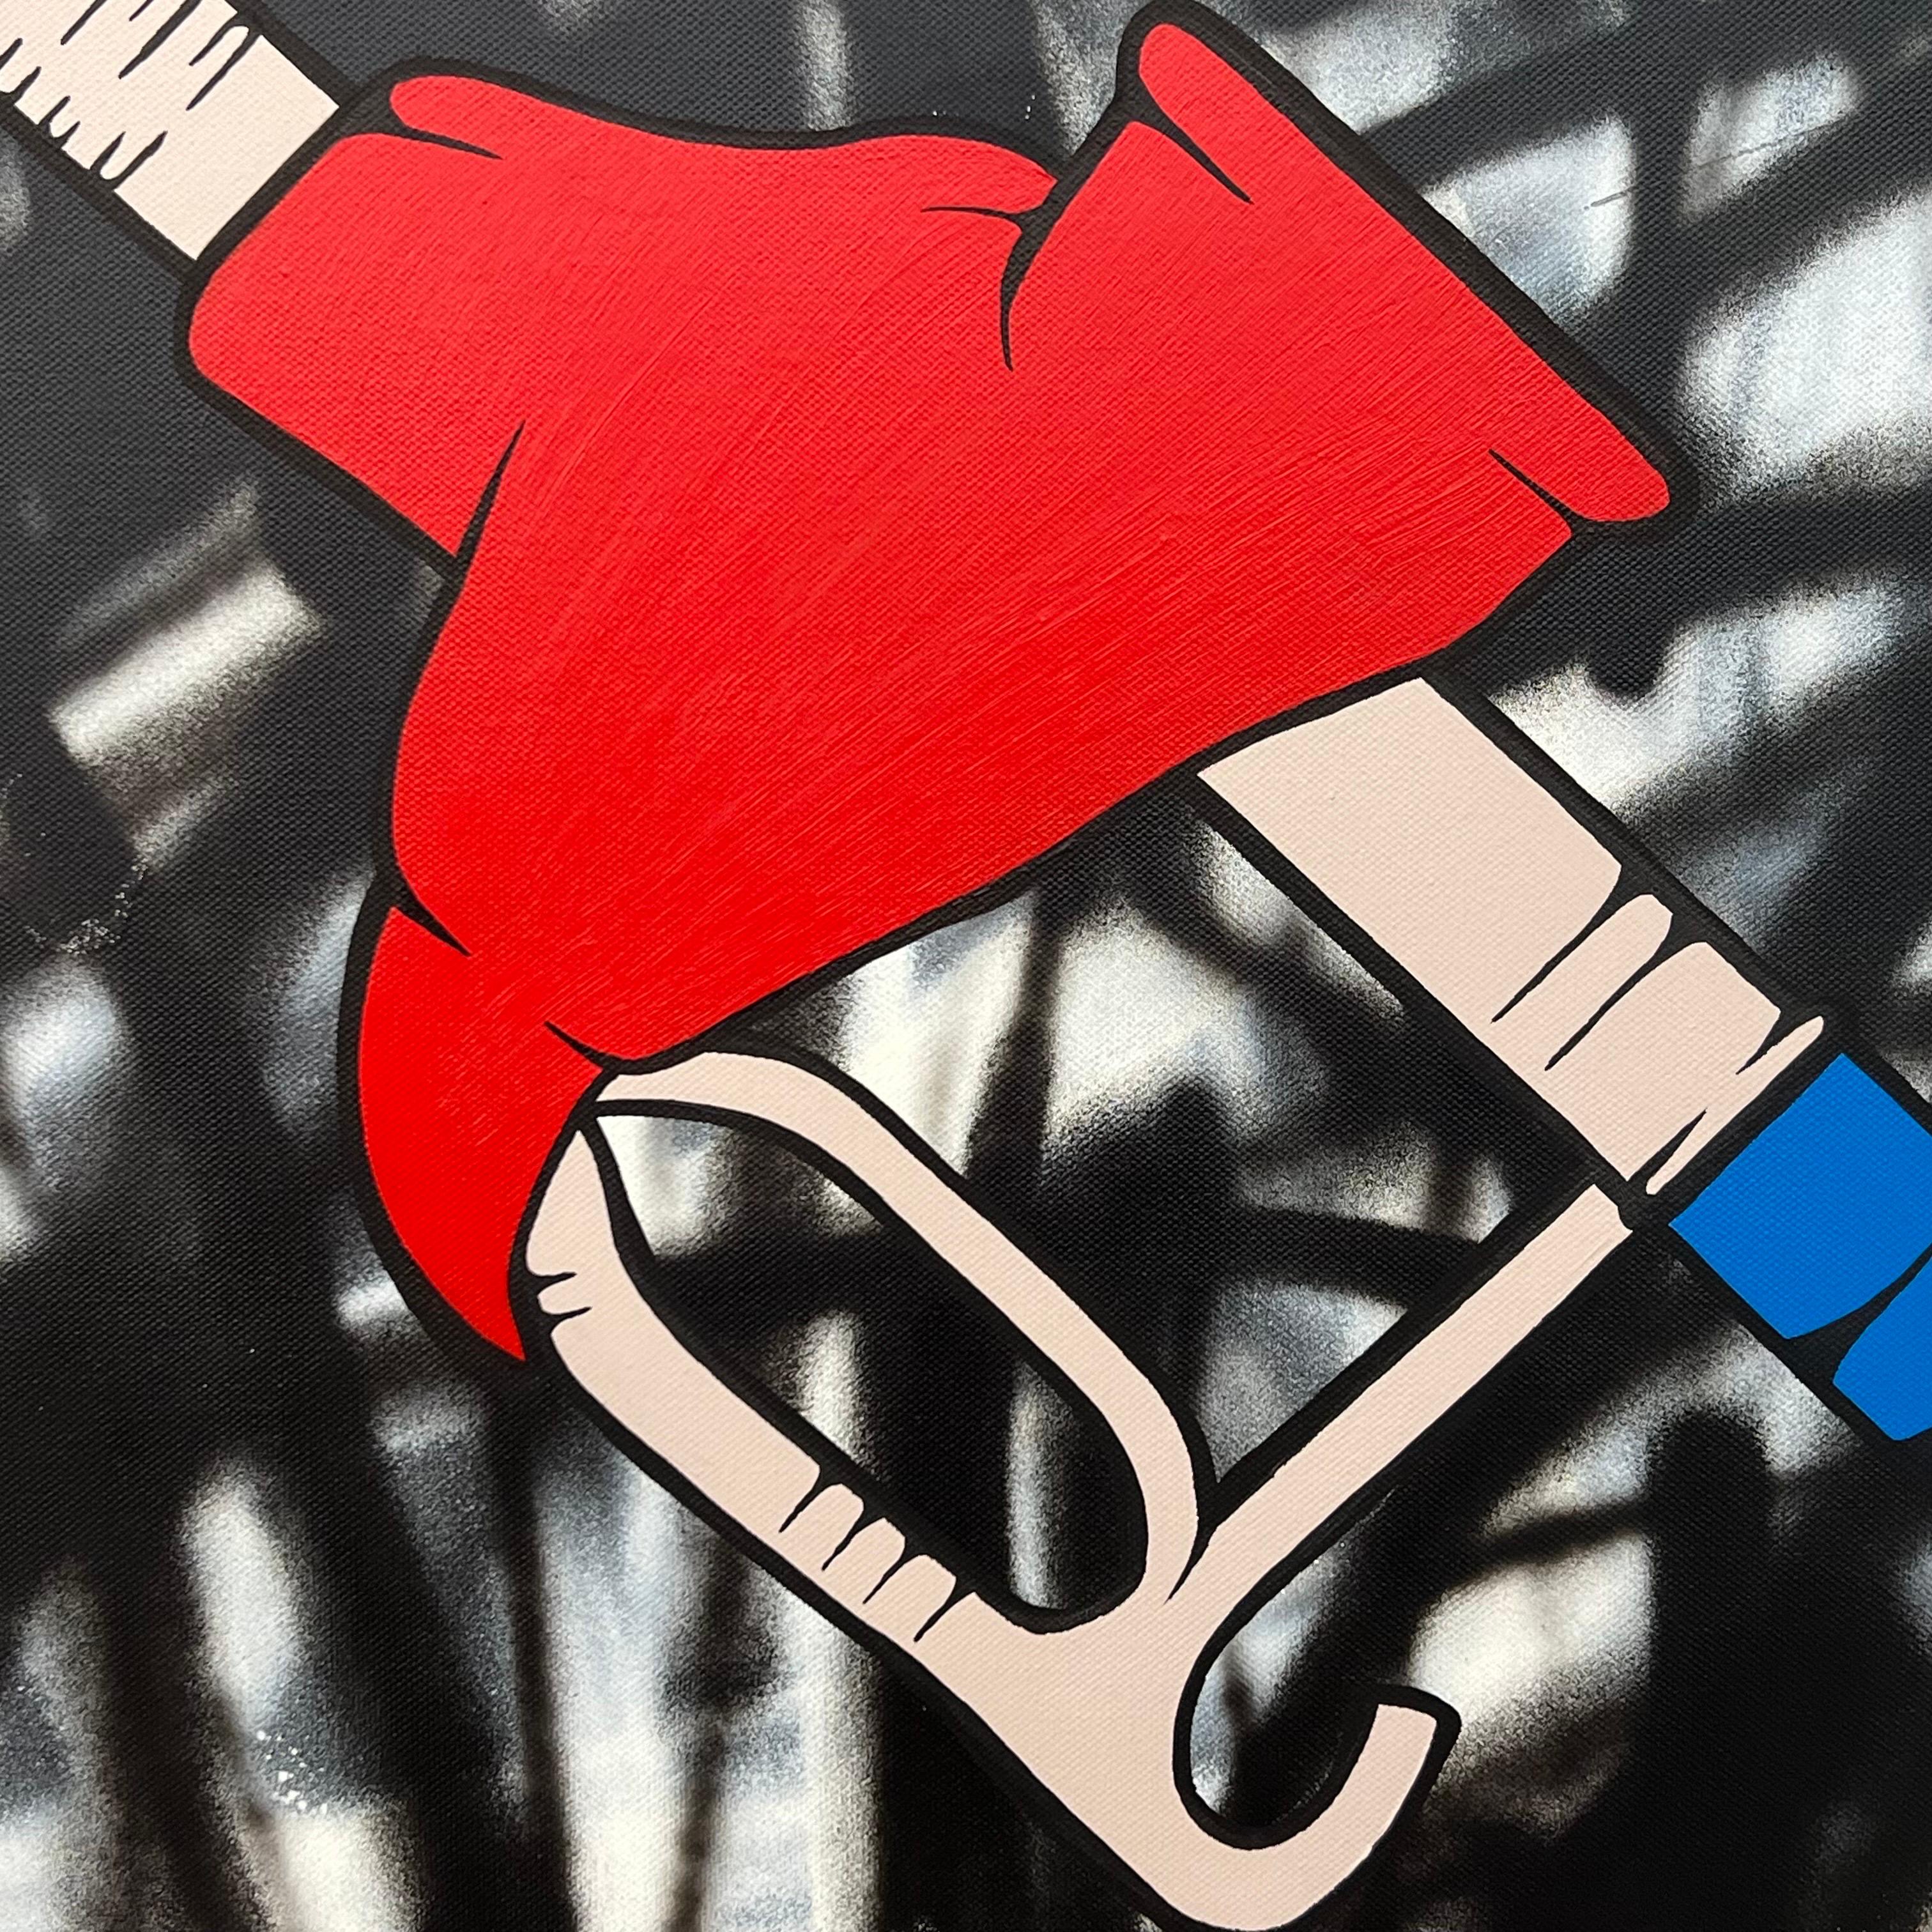 Oil Gas Fuel Pump Cartoon Pop Art on Abstract Background by British Urban Graffiti Artist, Chris Pegg. Chris Pegg est un Artiste de rue autodidacte qui produit des œuvres d'art avec un commentaire social fort. 

Son travail s'inspire d'artistes tels